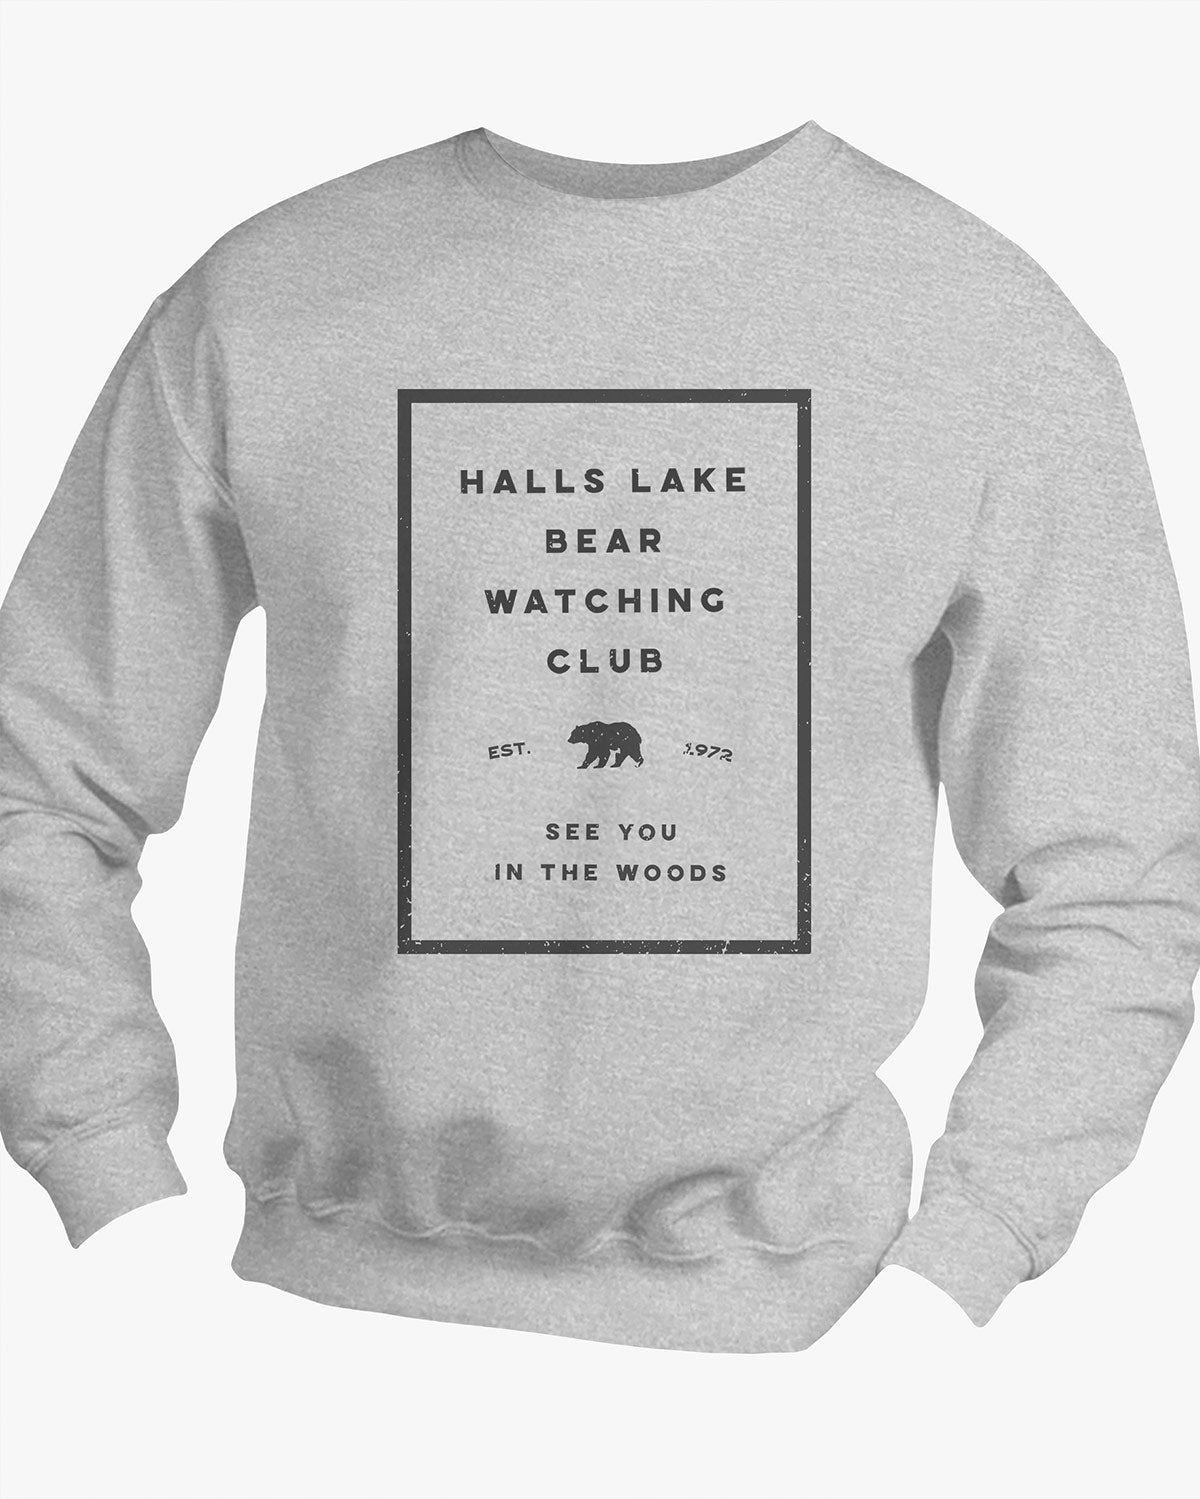 Bear Watching Club - Halls Lake - Sweater